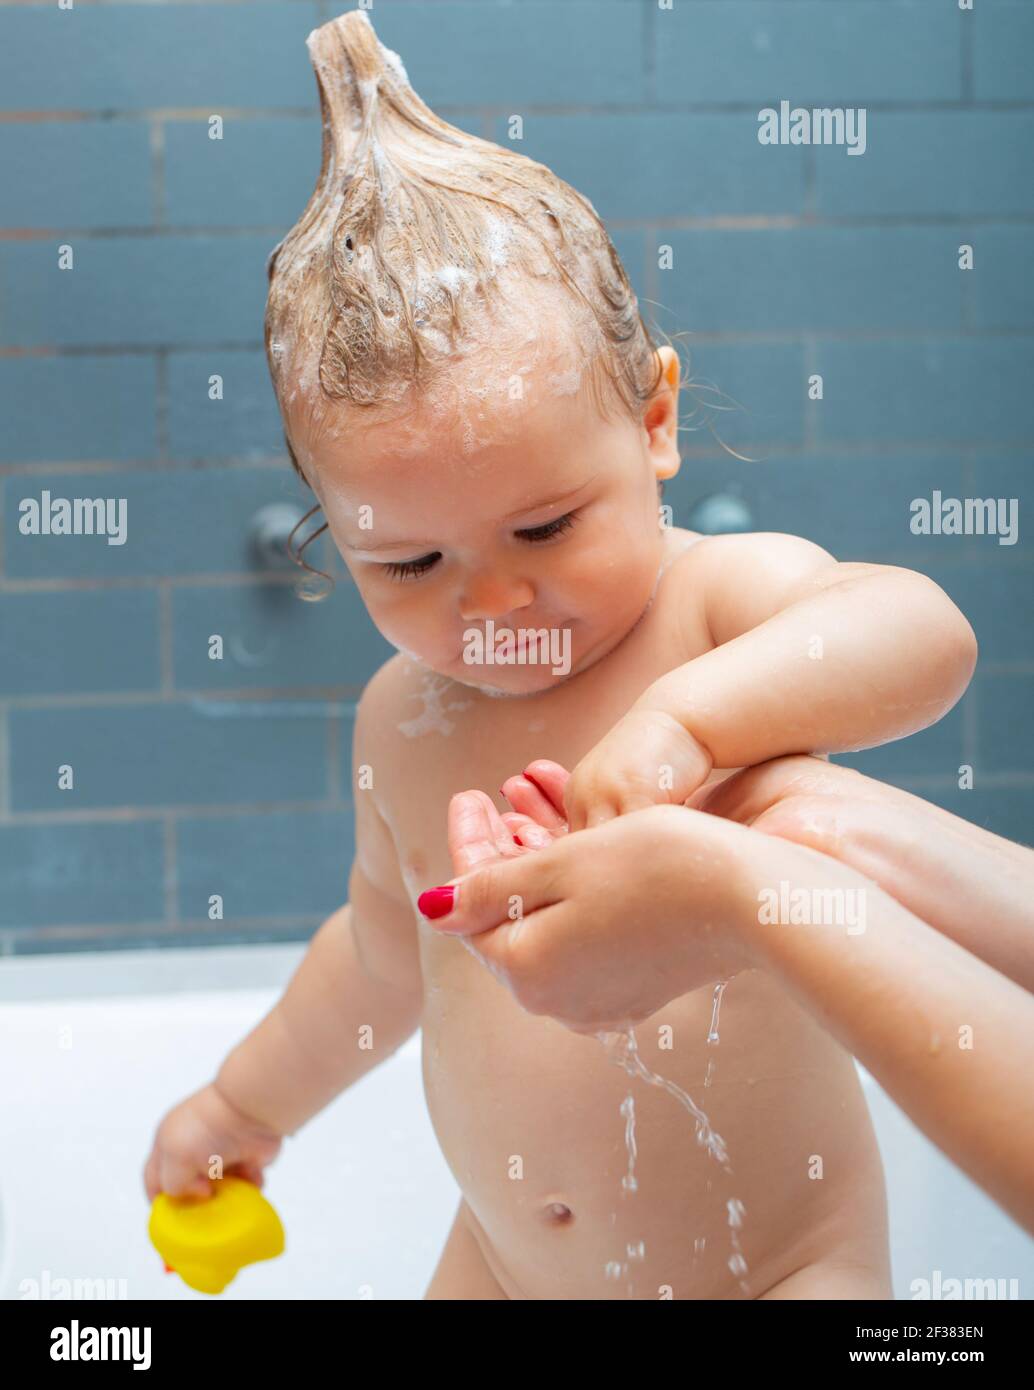 Lächelnd schönes Baby Baden in der Dusche. Waschen liebenswert Baby im  Badezimmer. Kind mit Seife flaugt auf die Haare, die baden. Nahaufnahme  Porträt von lächelndem Kind Stockfotografie - Alamy